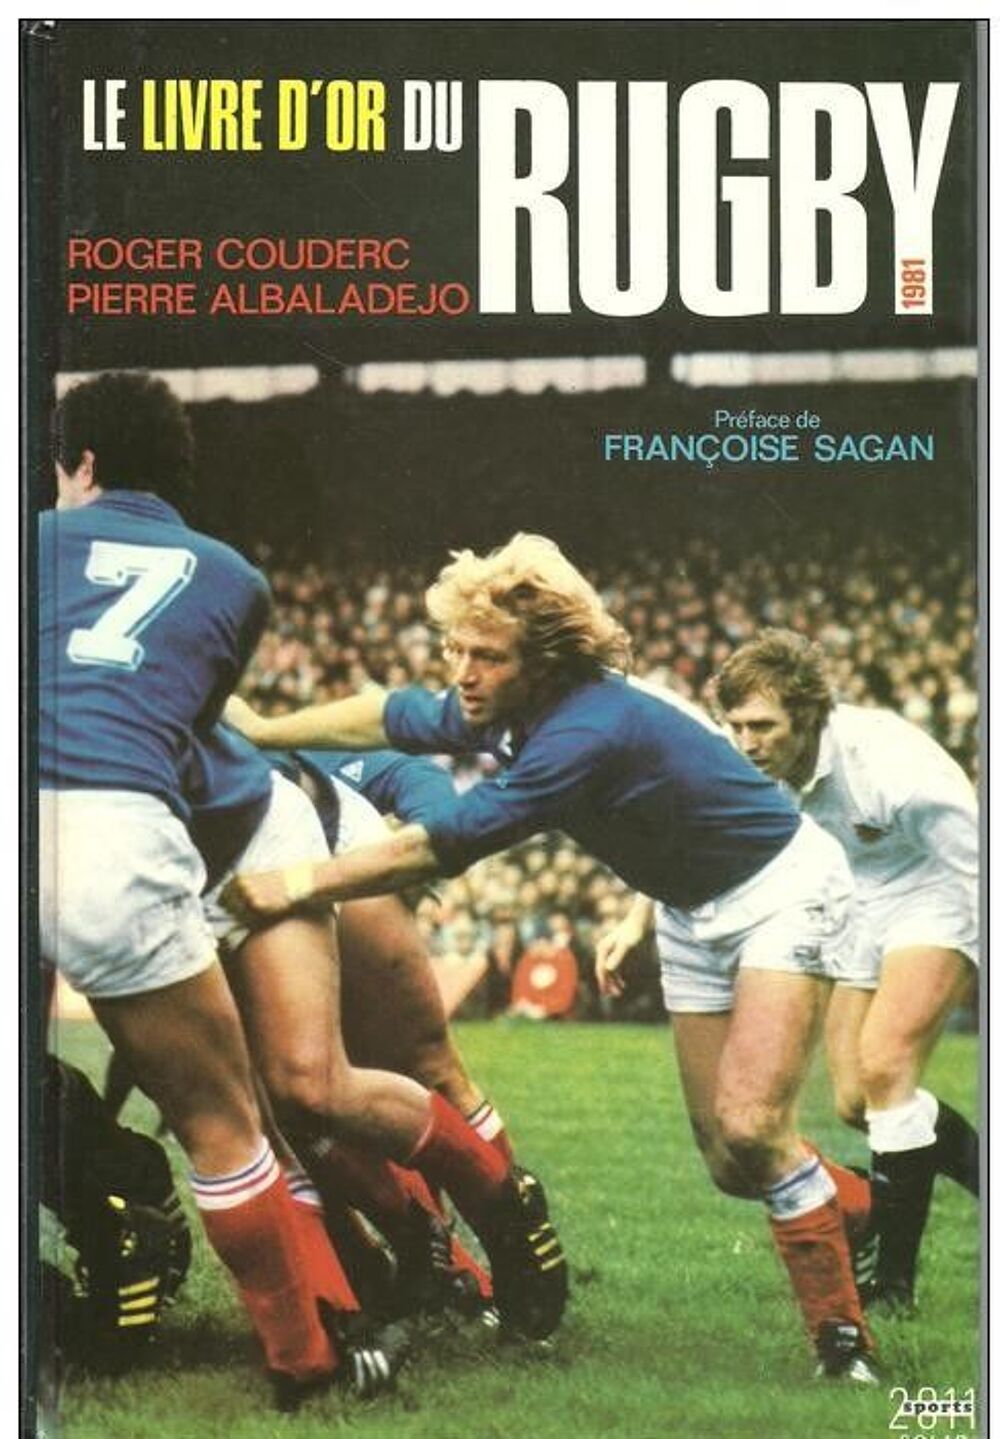 Roger COUDERC Pierre ALBALADEJO Le livre d'or du rugby -1981 Livres et BD